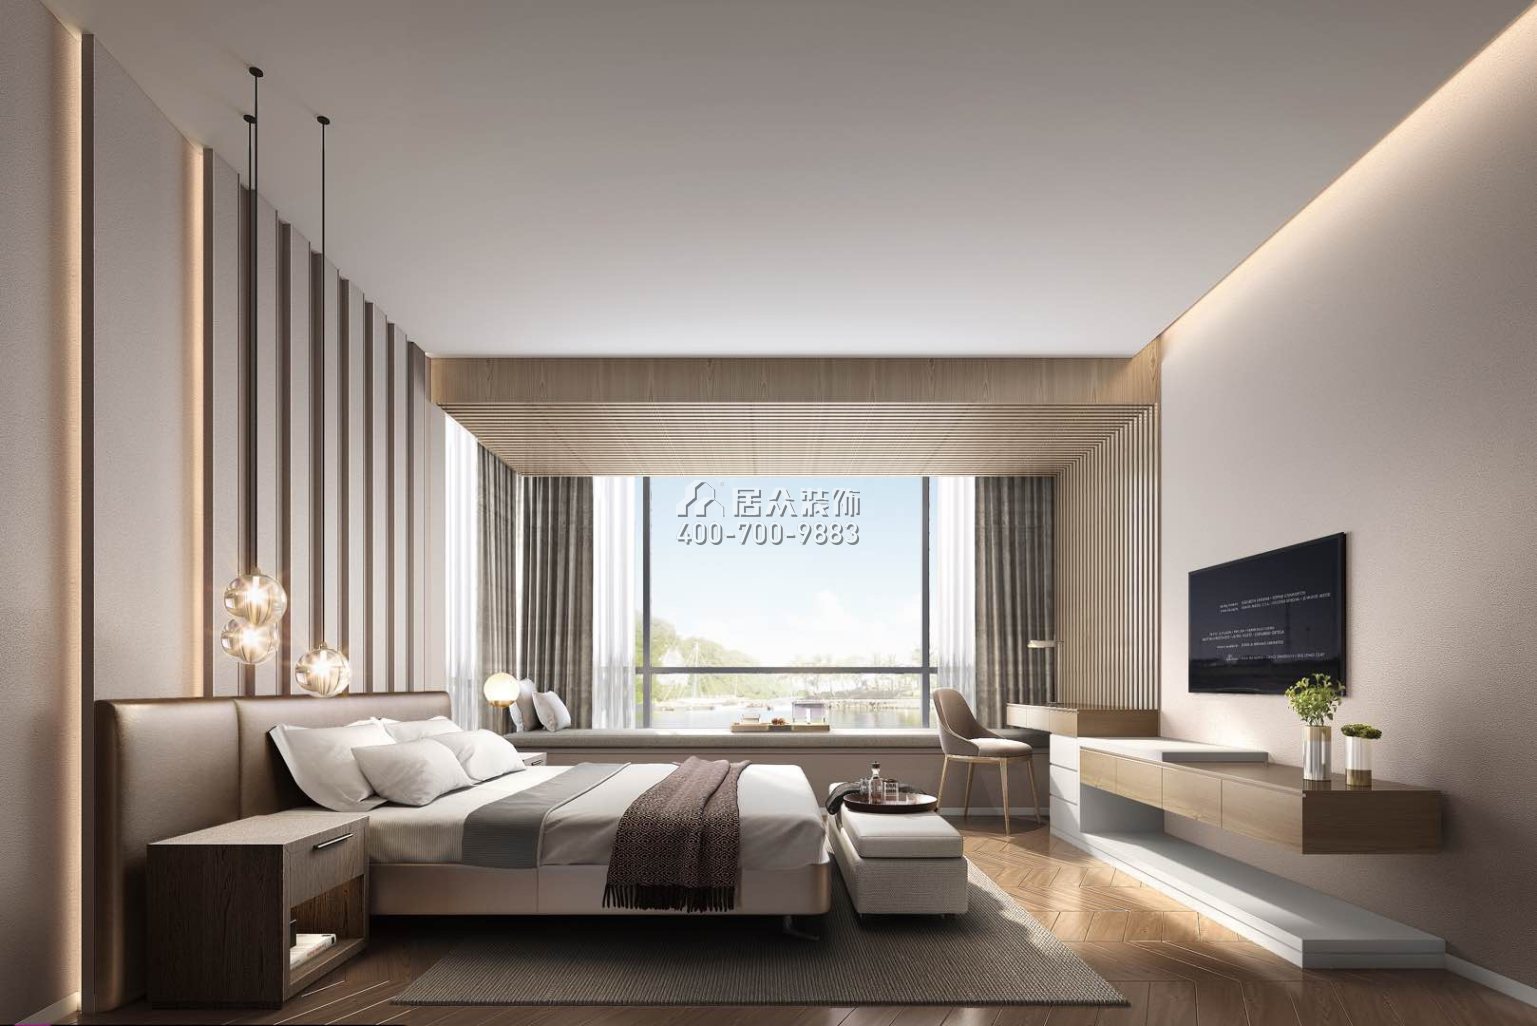 翡翠海岸花园177平方米现代简约风格平层户型卧室kok电竞平台效果图